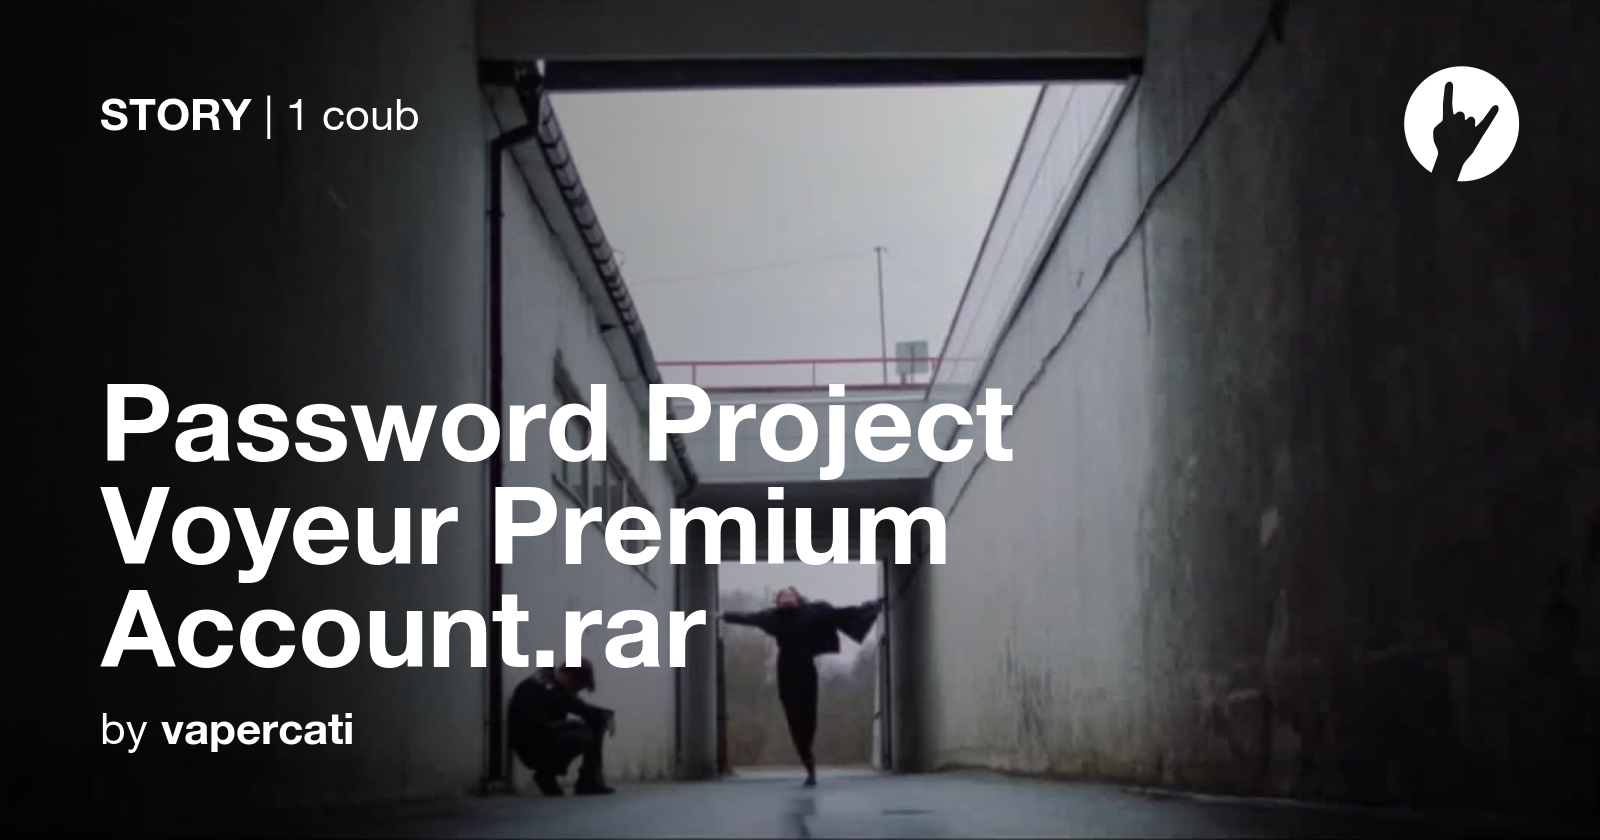 project voyeur hacked password